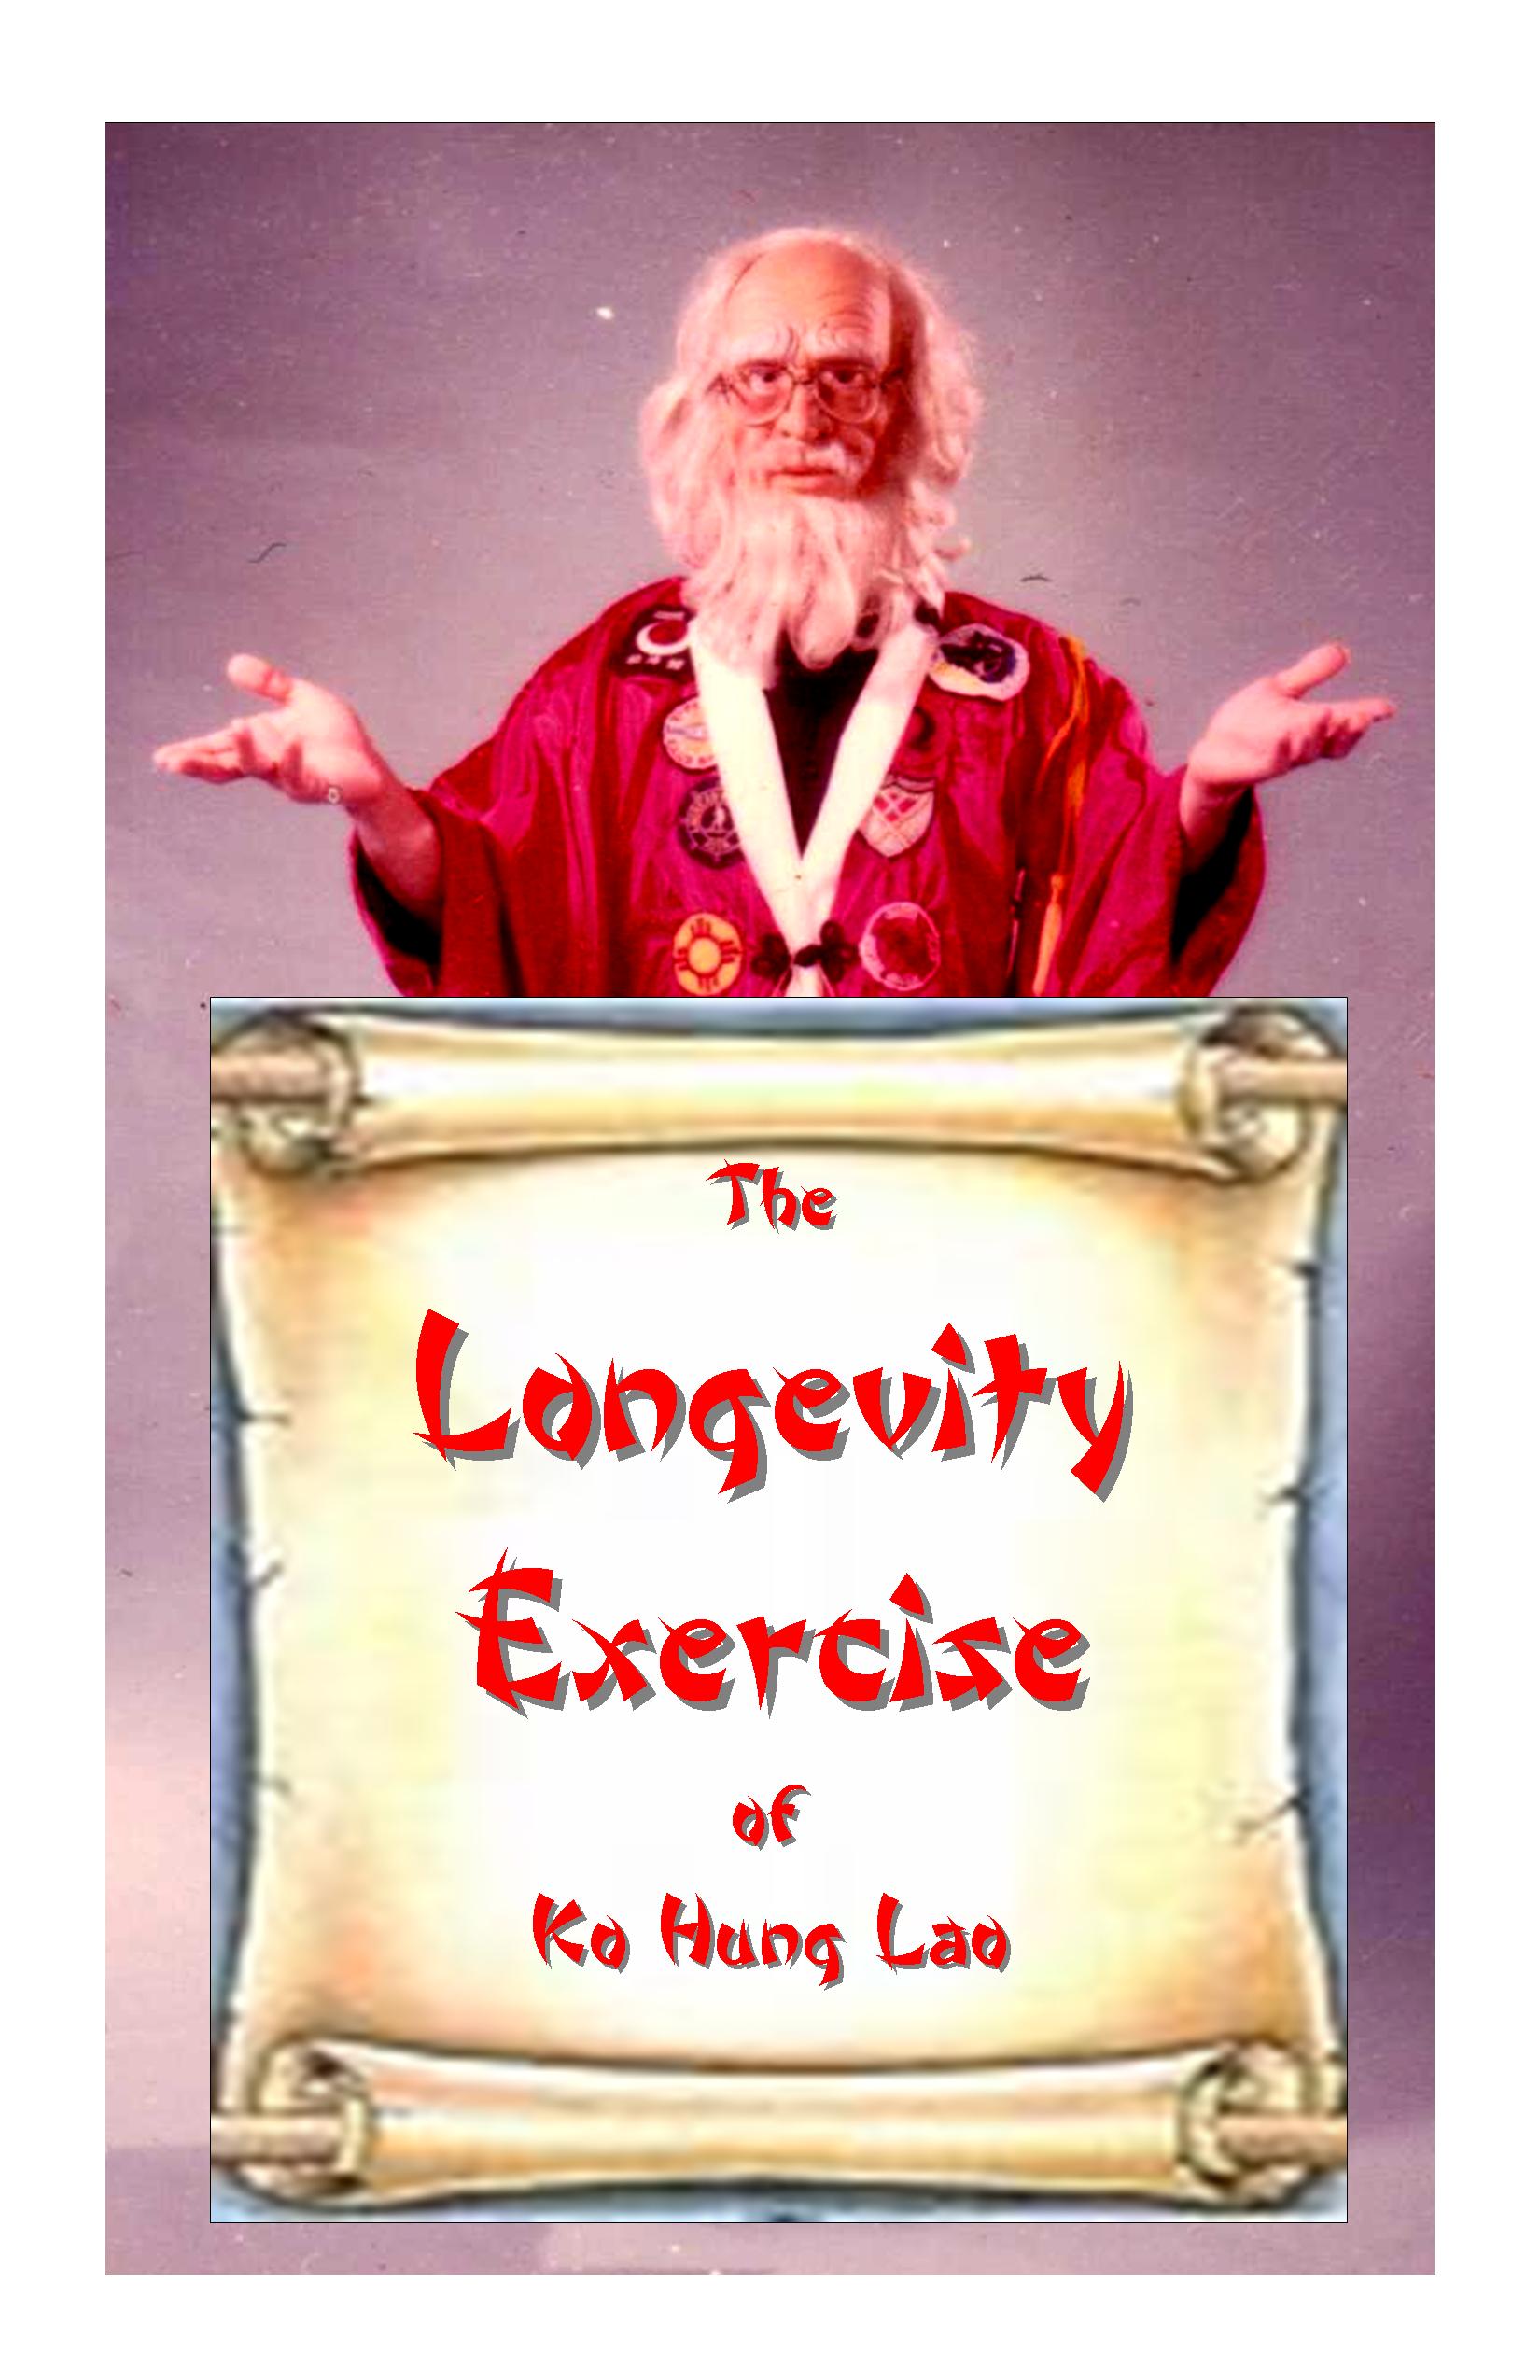 THE LONGEVITY EXERCISE